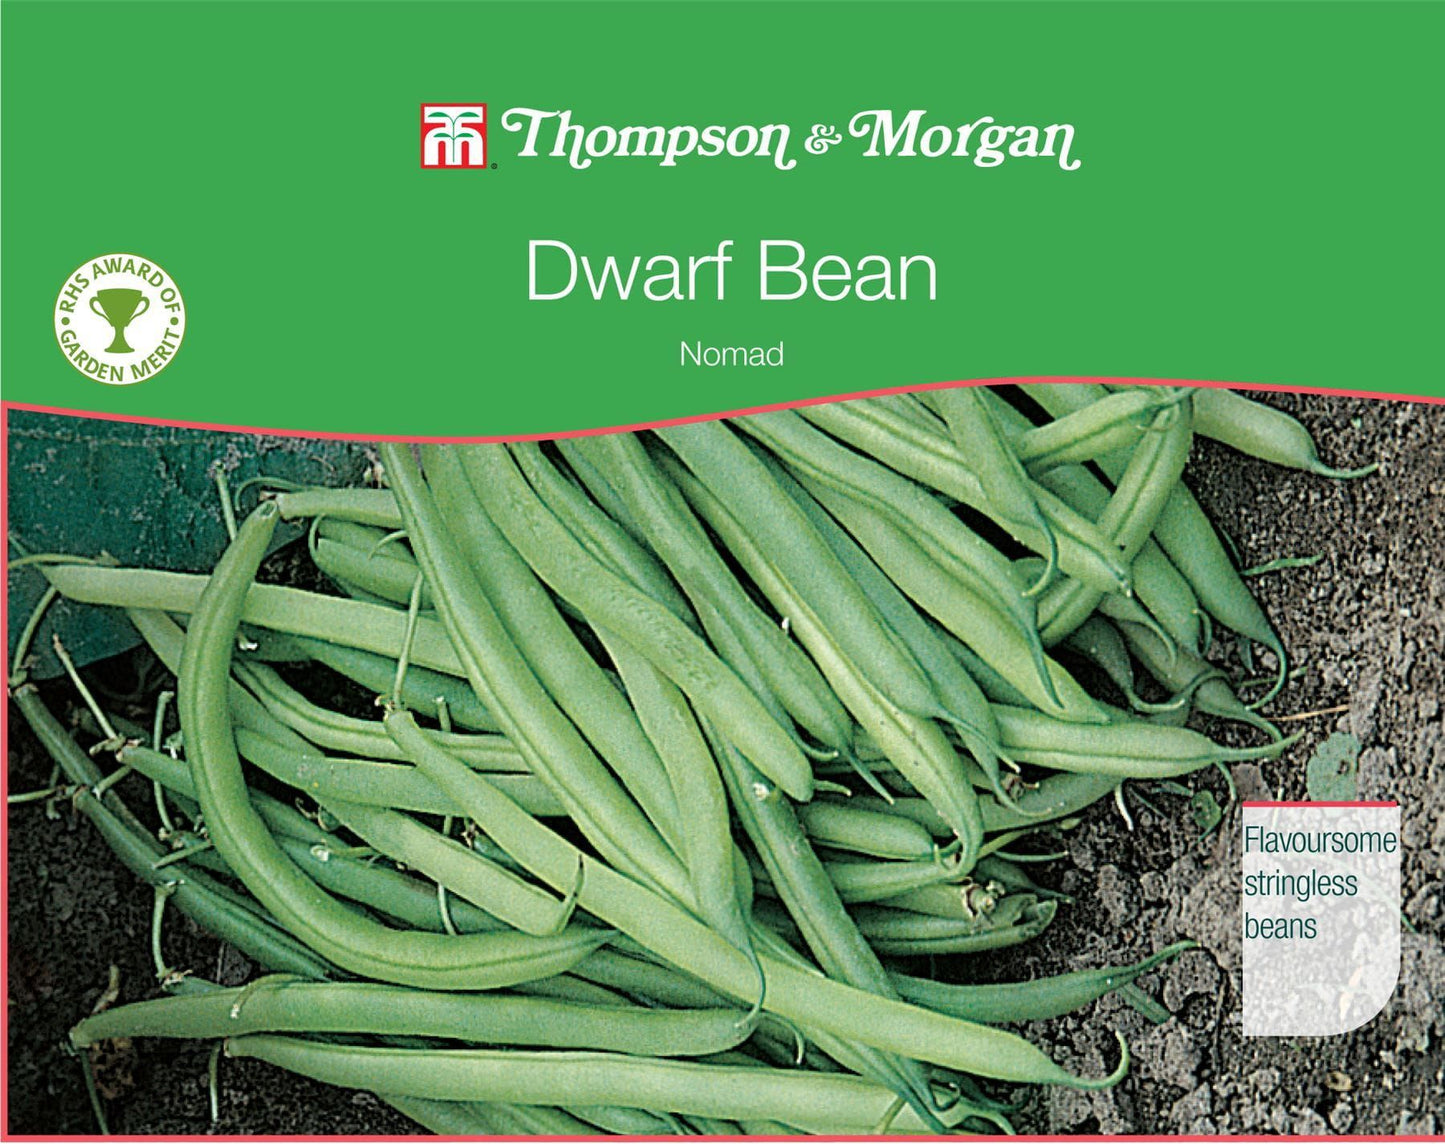 Thompson & Morgan RHS Dwarf Bean Nomad 100 Seed